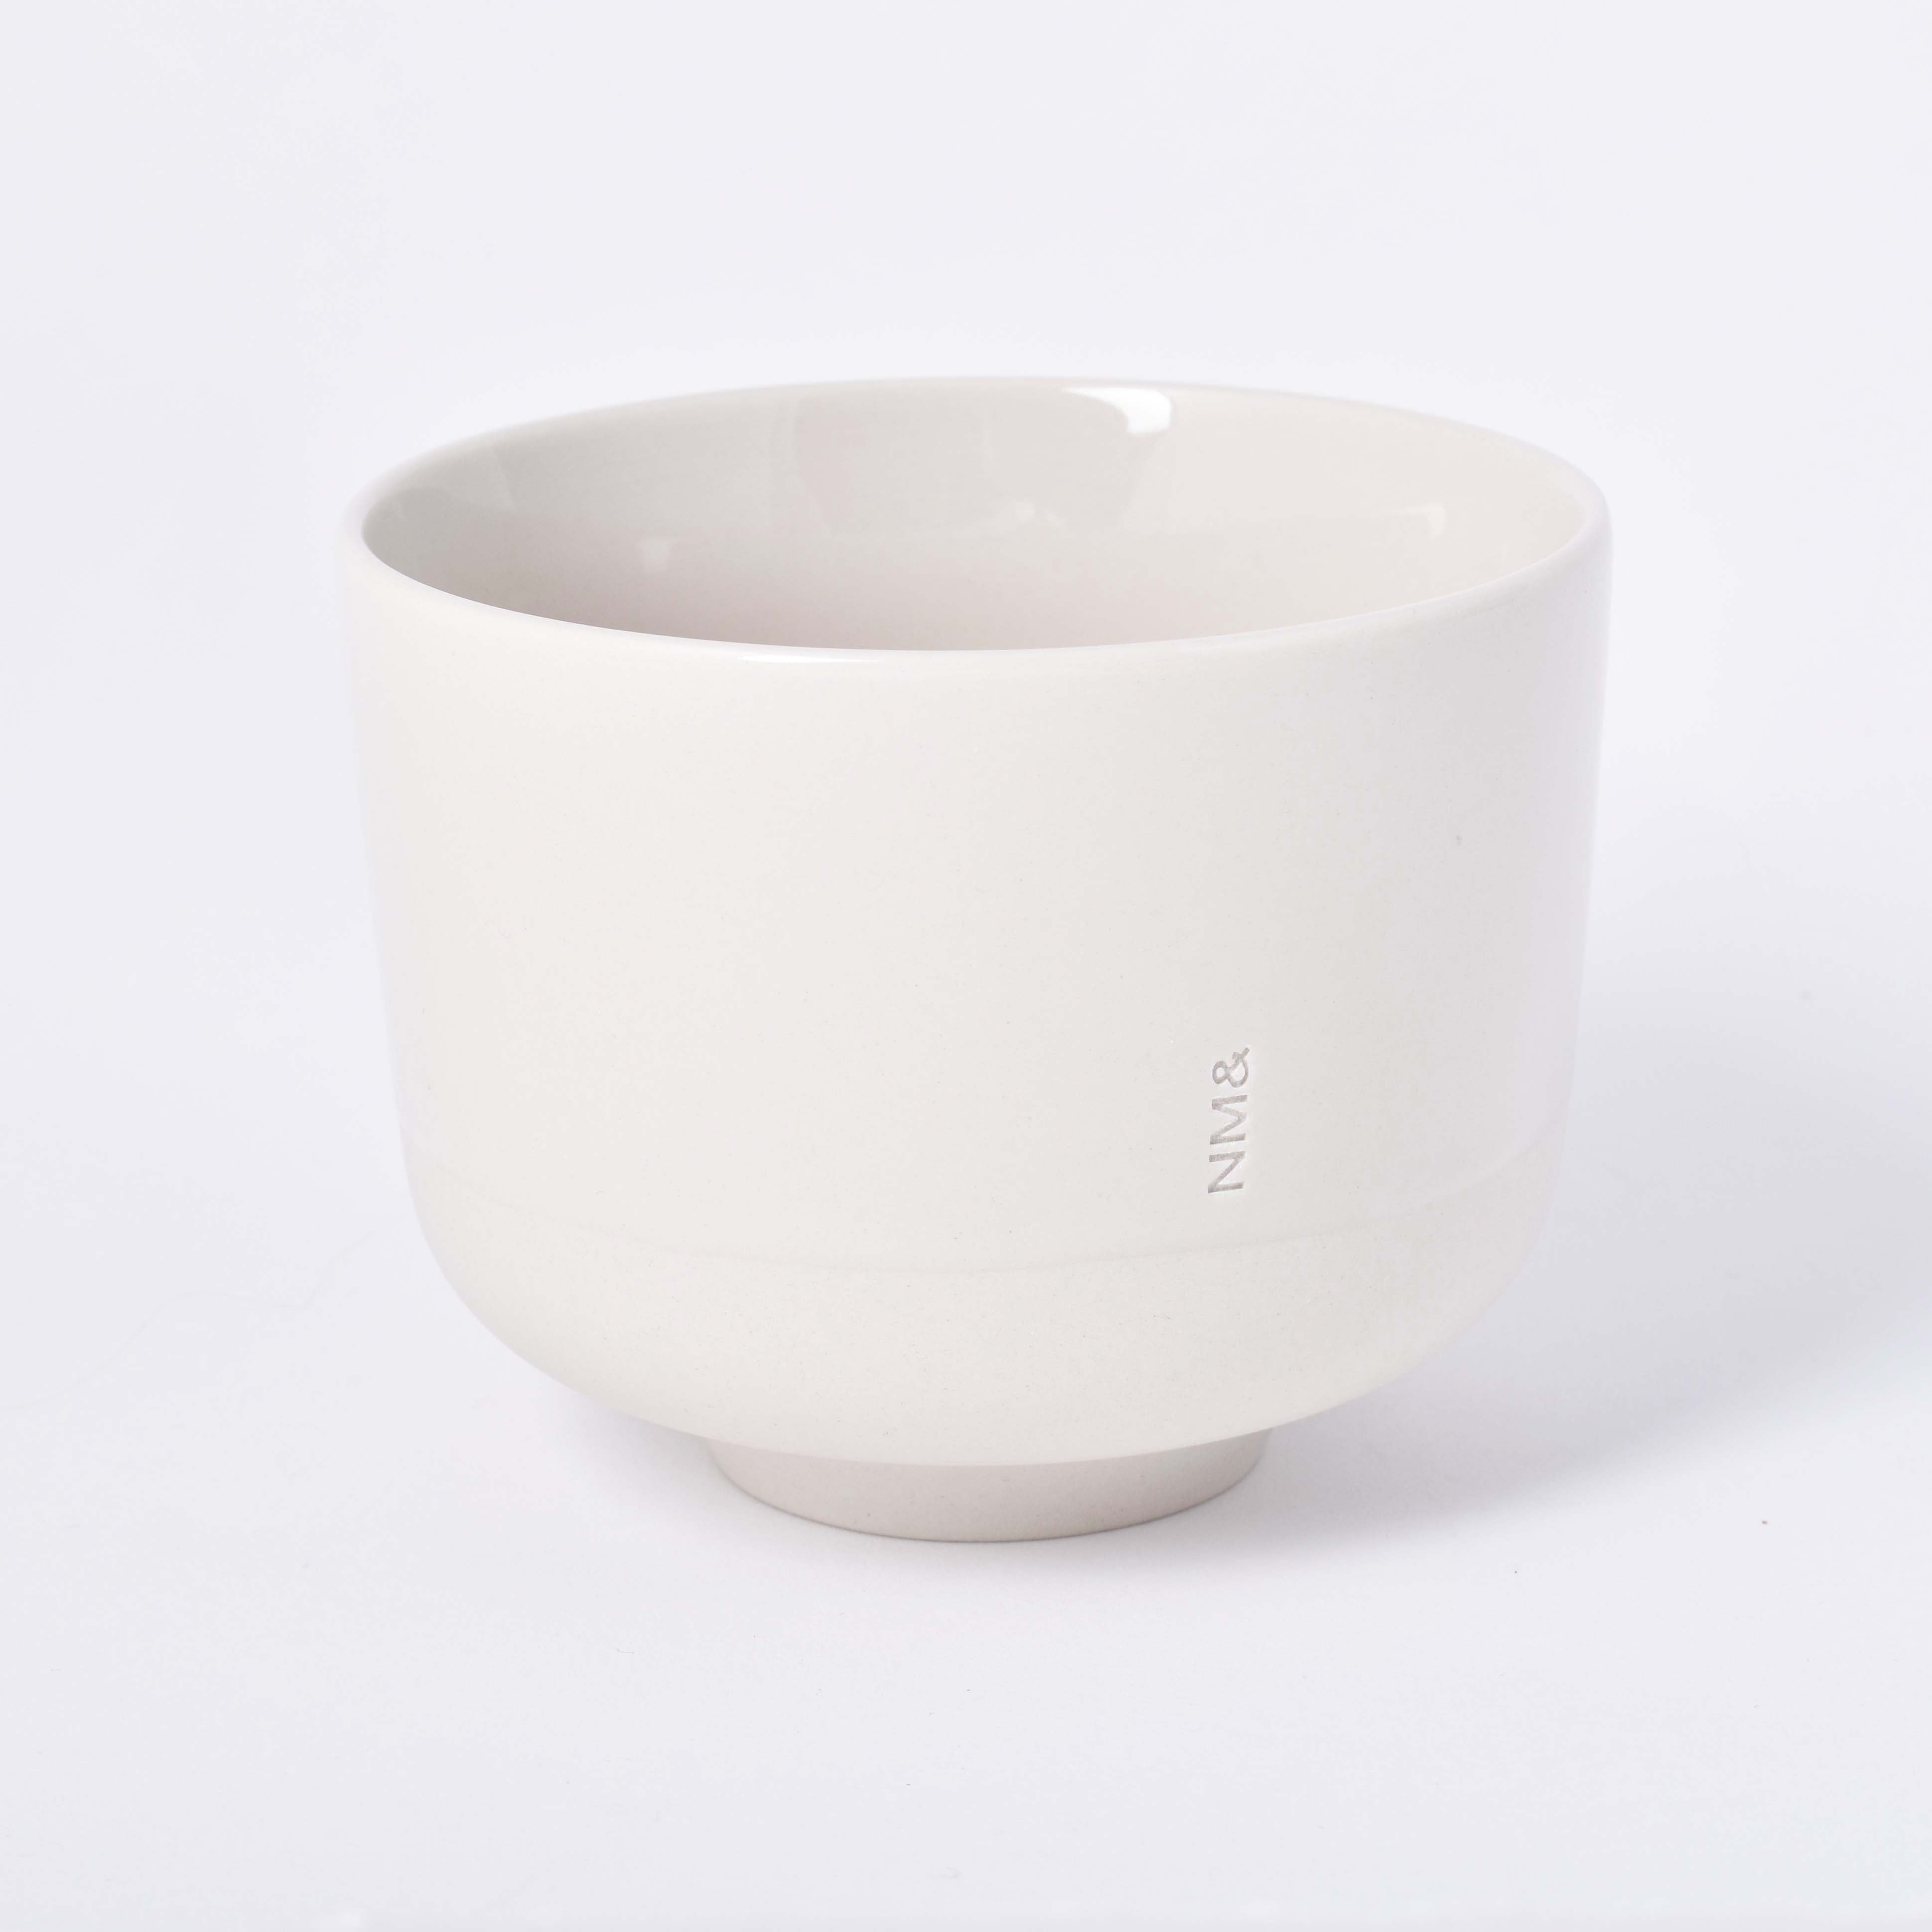 Sandfärgad kopp utan öra med NM& monogram ingraverat i design av Carina Seth Andersson